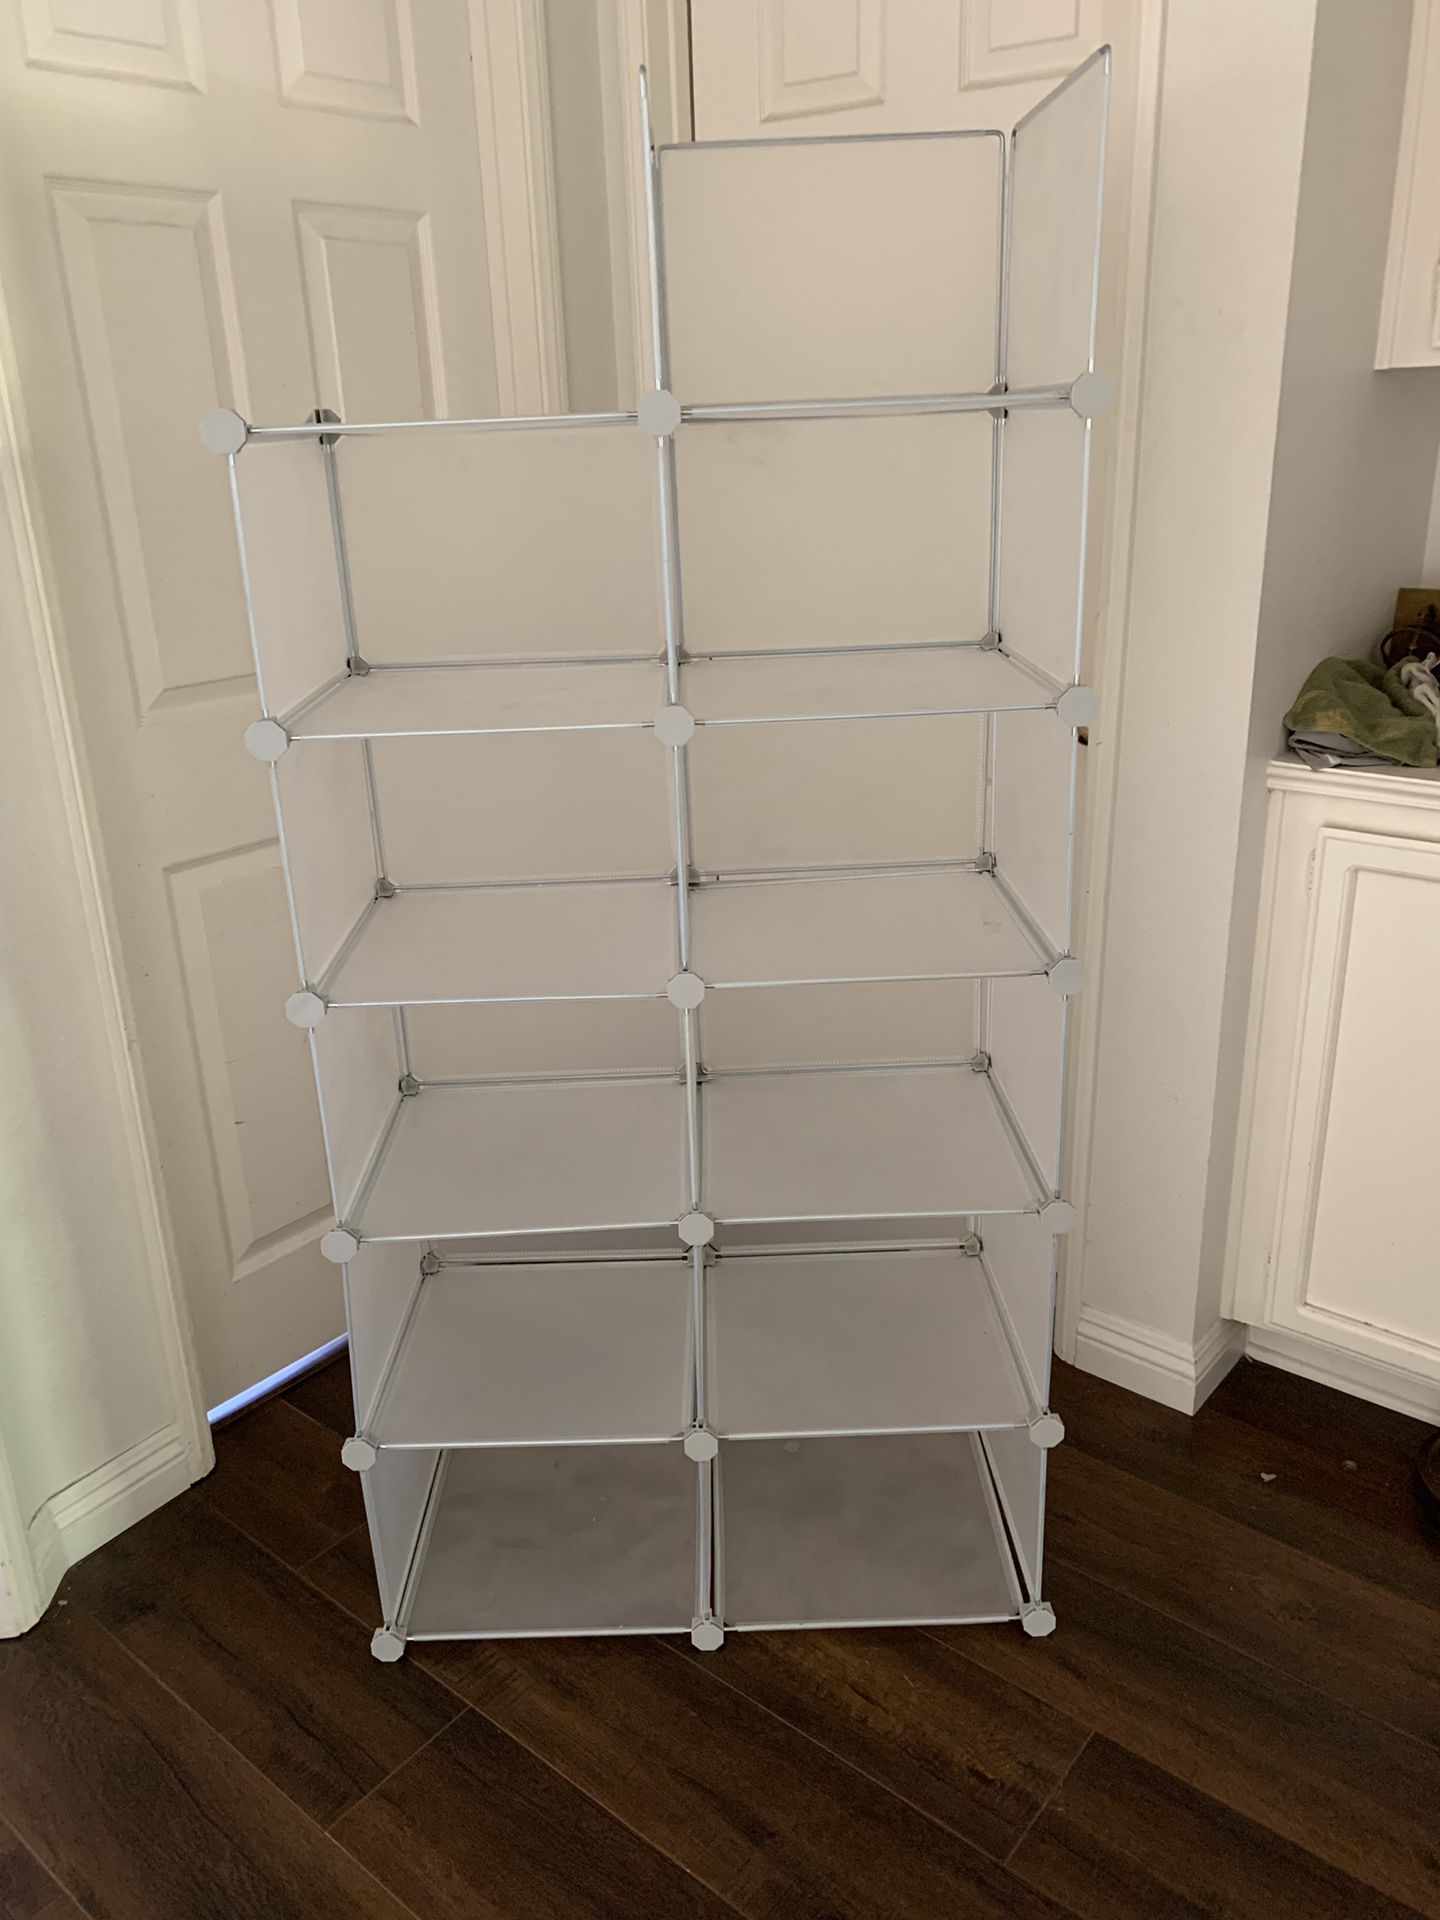 Closet organizer 10” x 14 1/2 each square